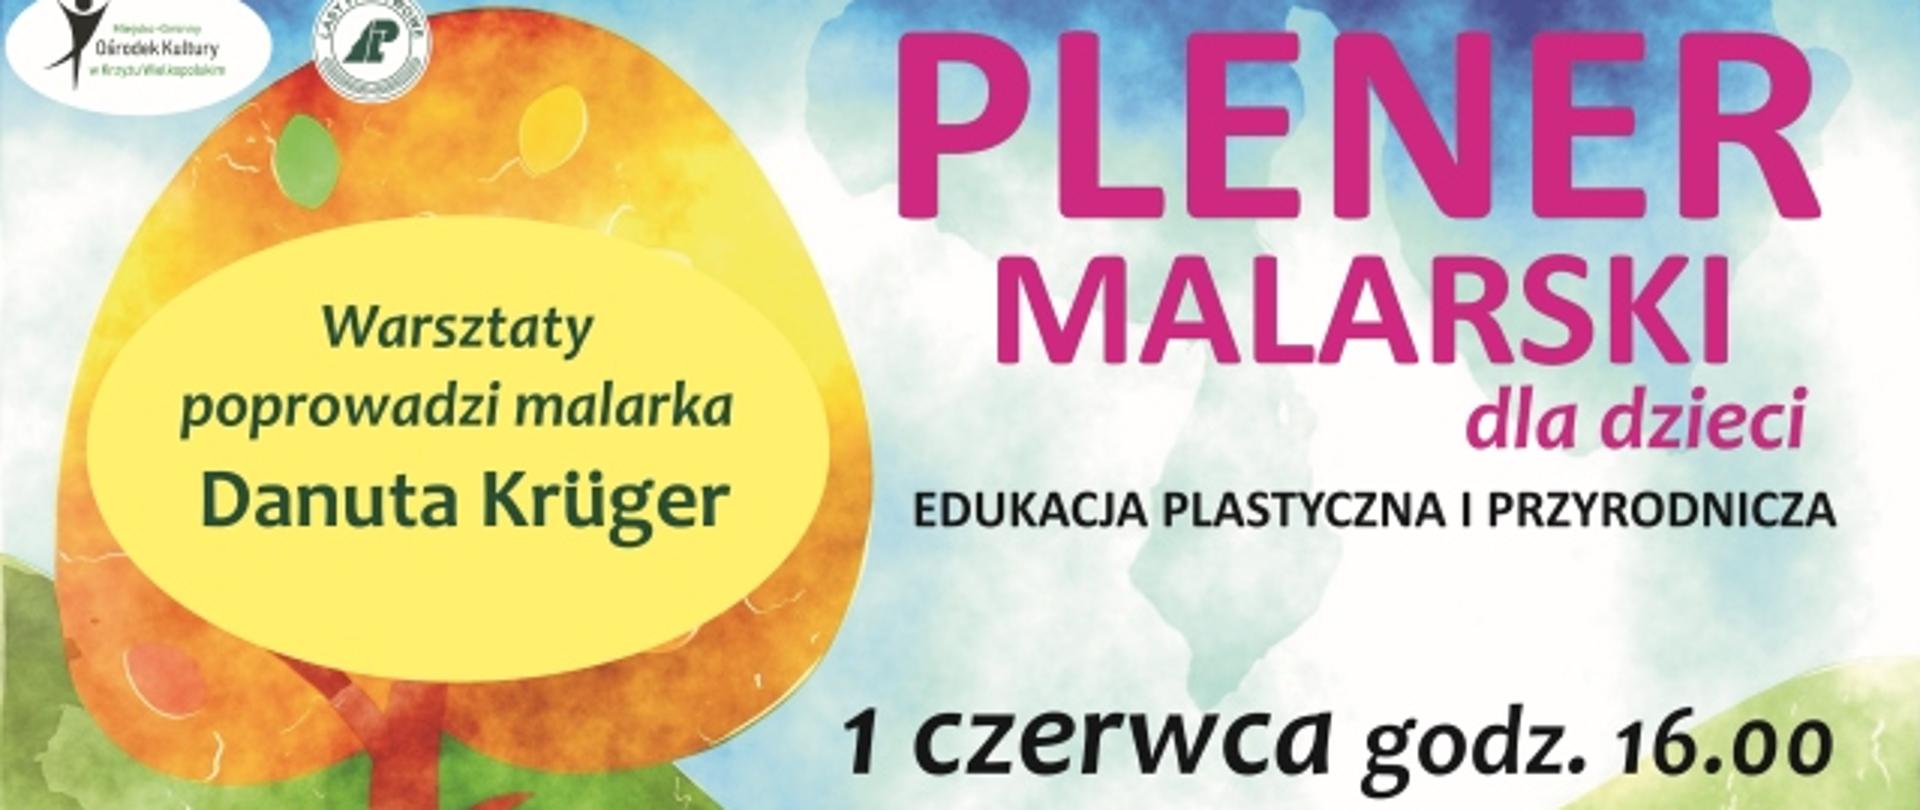 Plener malarski dla dzieci, malarka Danuta Krüger, 1 czerwca 2021, wtorek, godz. 16:00, Leśnictwo Rzeczyn, 15 zł od dziecka , organizator zapewnia farby, podobrazia i pędzle